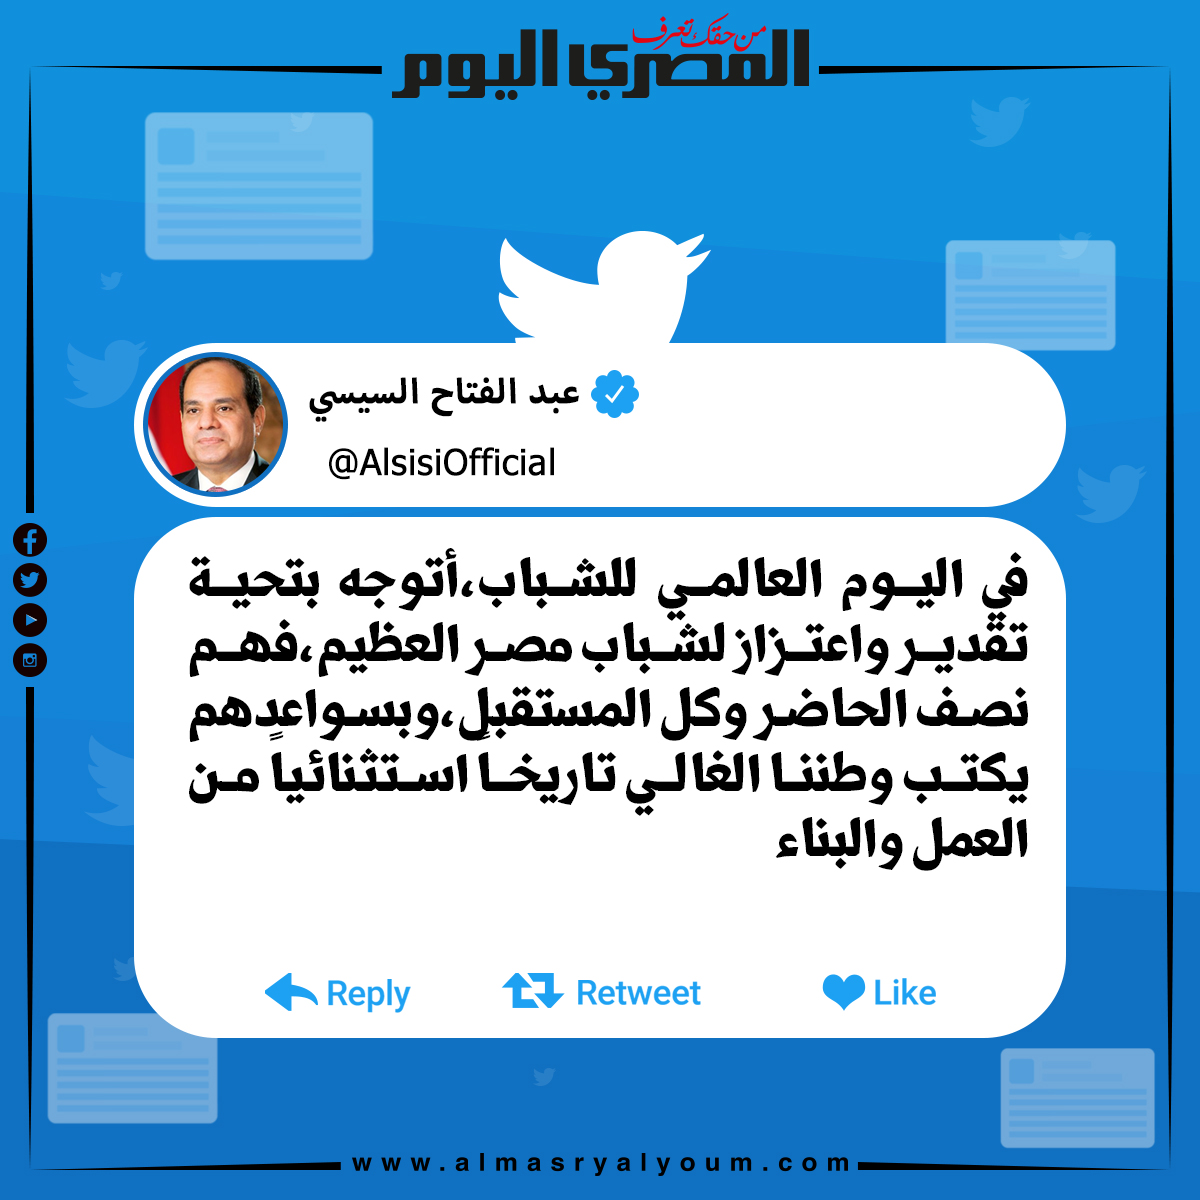 الرئيس عبدالفتاح السيسي عبر «تويتر» «في اليوم العالمي للشباب،أتوجه بتحية تقدير واعتزاز لشباب مصر العظيم»